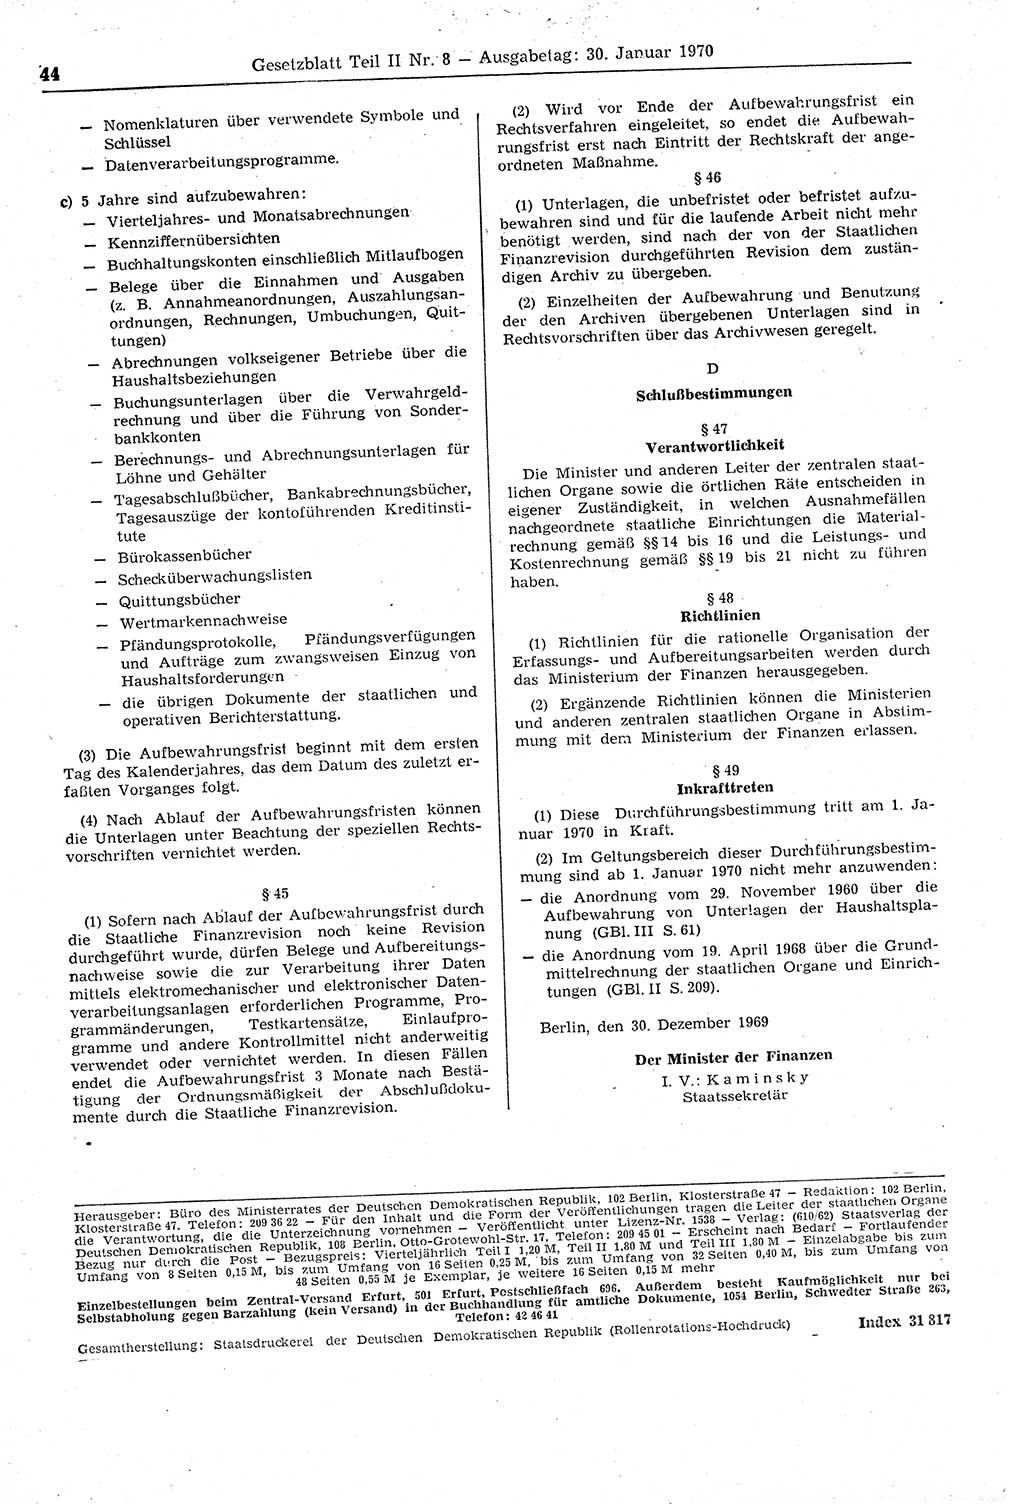 Gesetzblatt (GBl.) der Deutschen Demokratischen Republik (DDR) Teil ⅠⅠ 1970, Seite 44 (GBl. DDR ⅠⅠ 1970, S. 44)